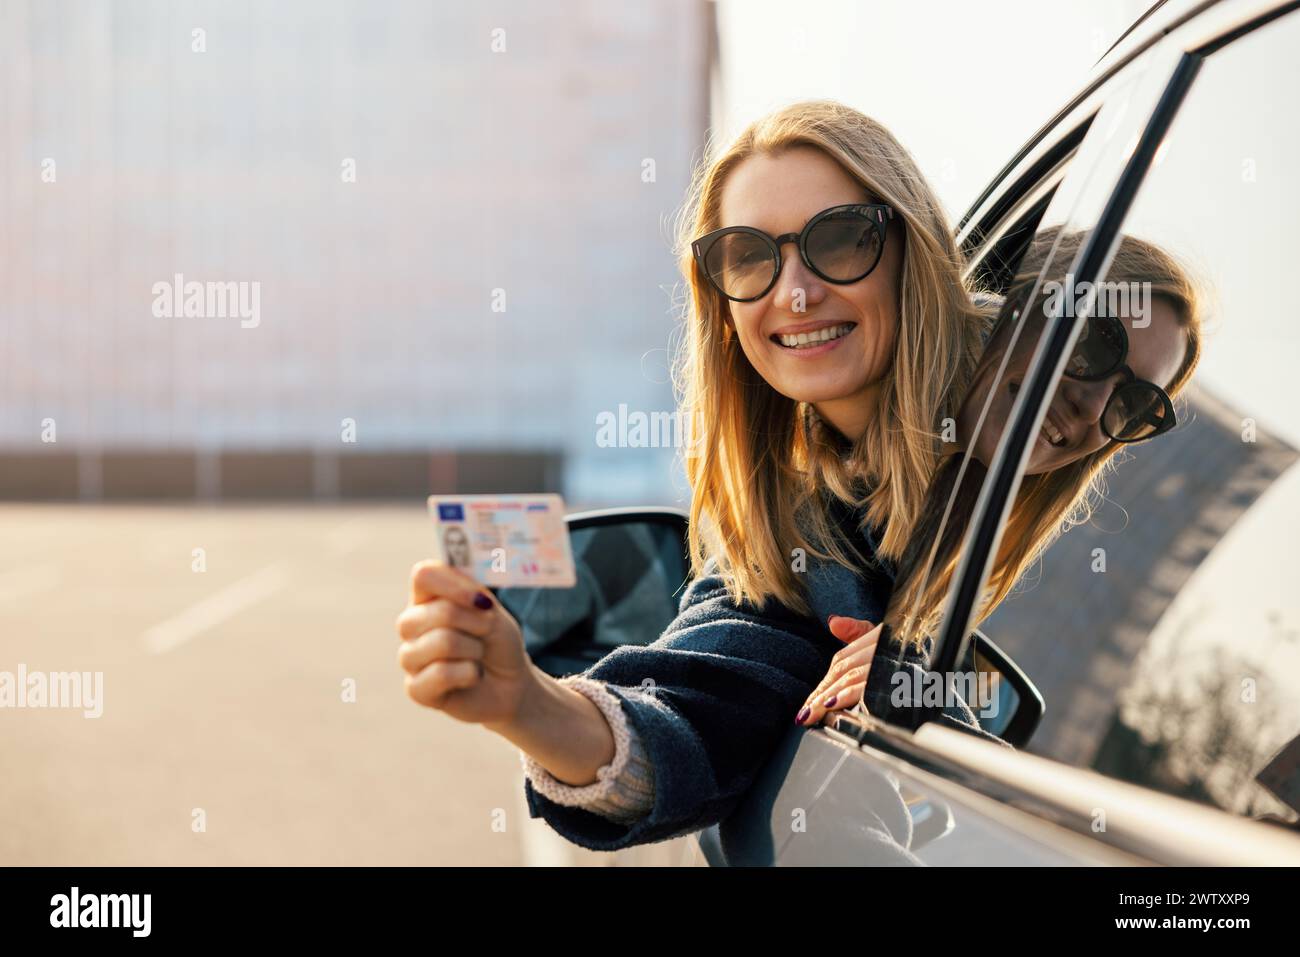 giovane donna felice che mostra la sua nuova patente fuori dal finestrino dell'auto dopo aver superato il test alla scuola guida. copia spazio Foto Stock